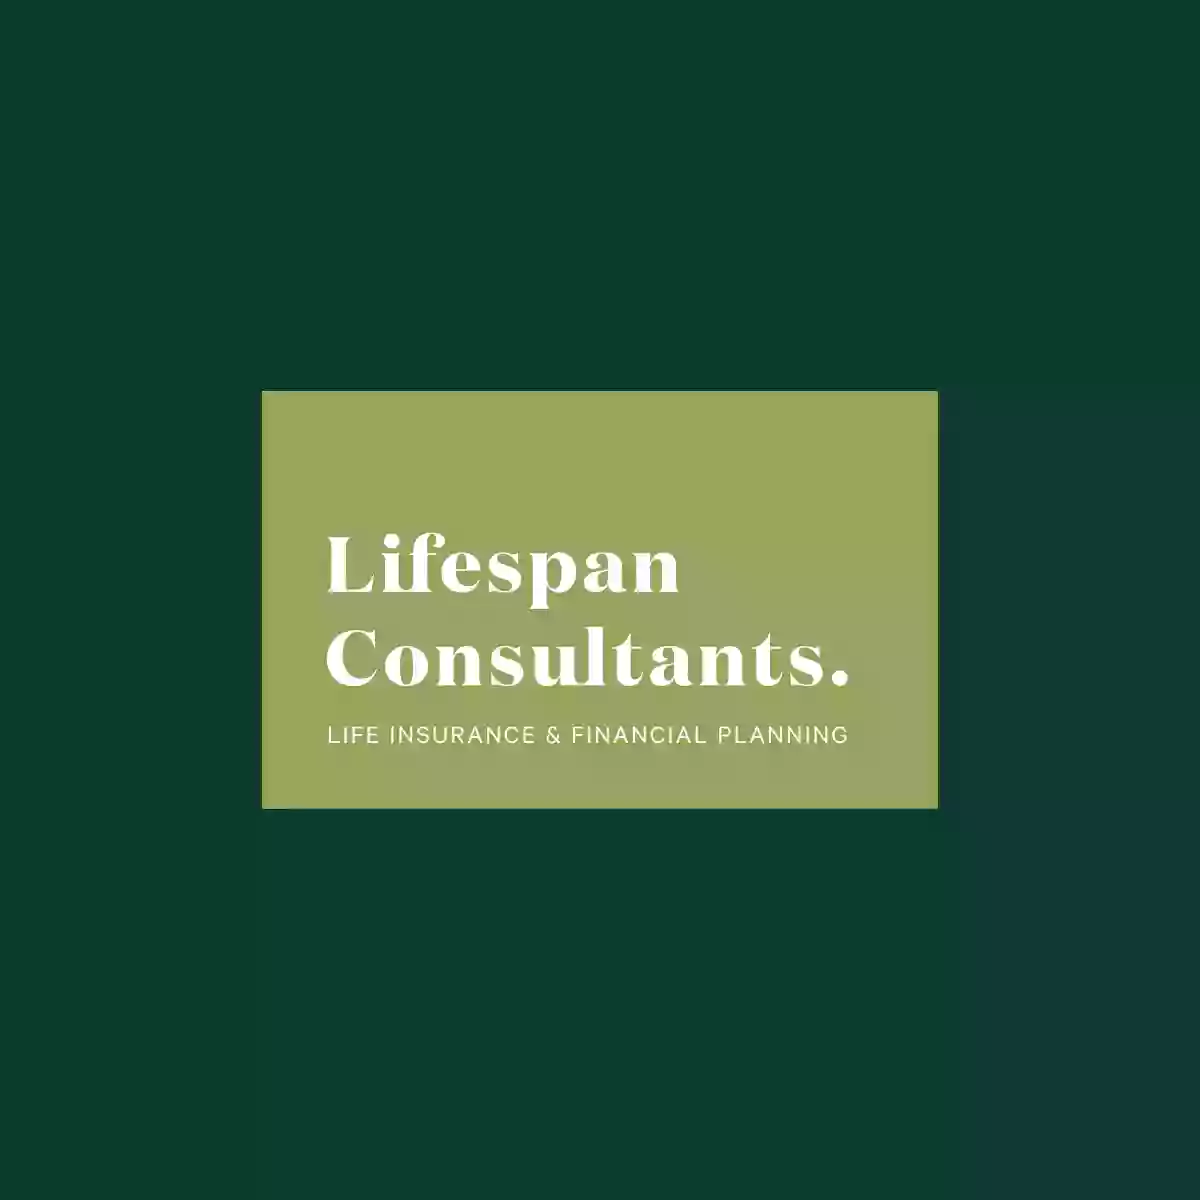 Lifespan Consultants